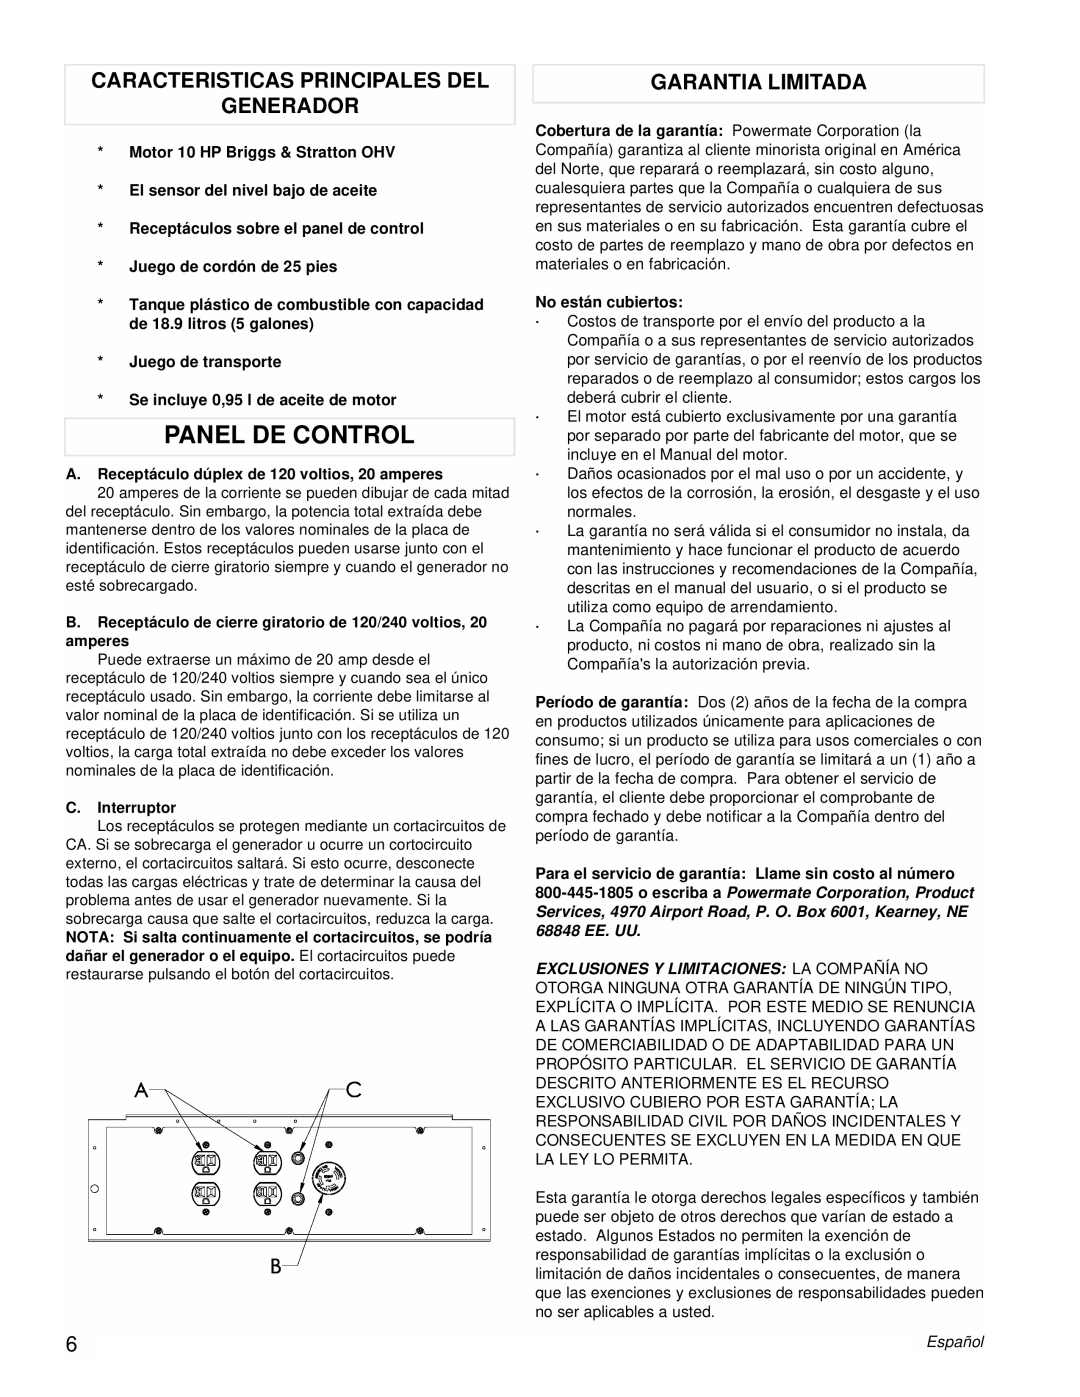 Powermate PM0545010 manual Panel De Control, Caracteristicas Principales Del Generador, Garantia Limitada 